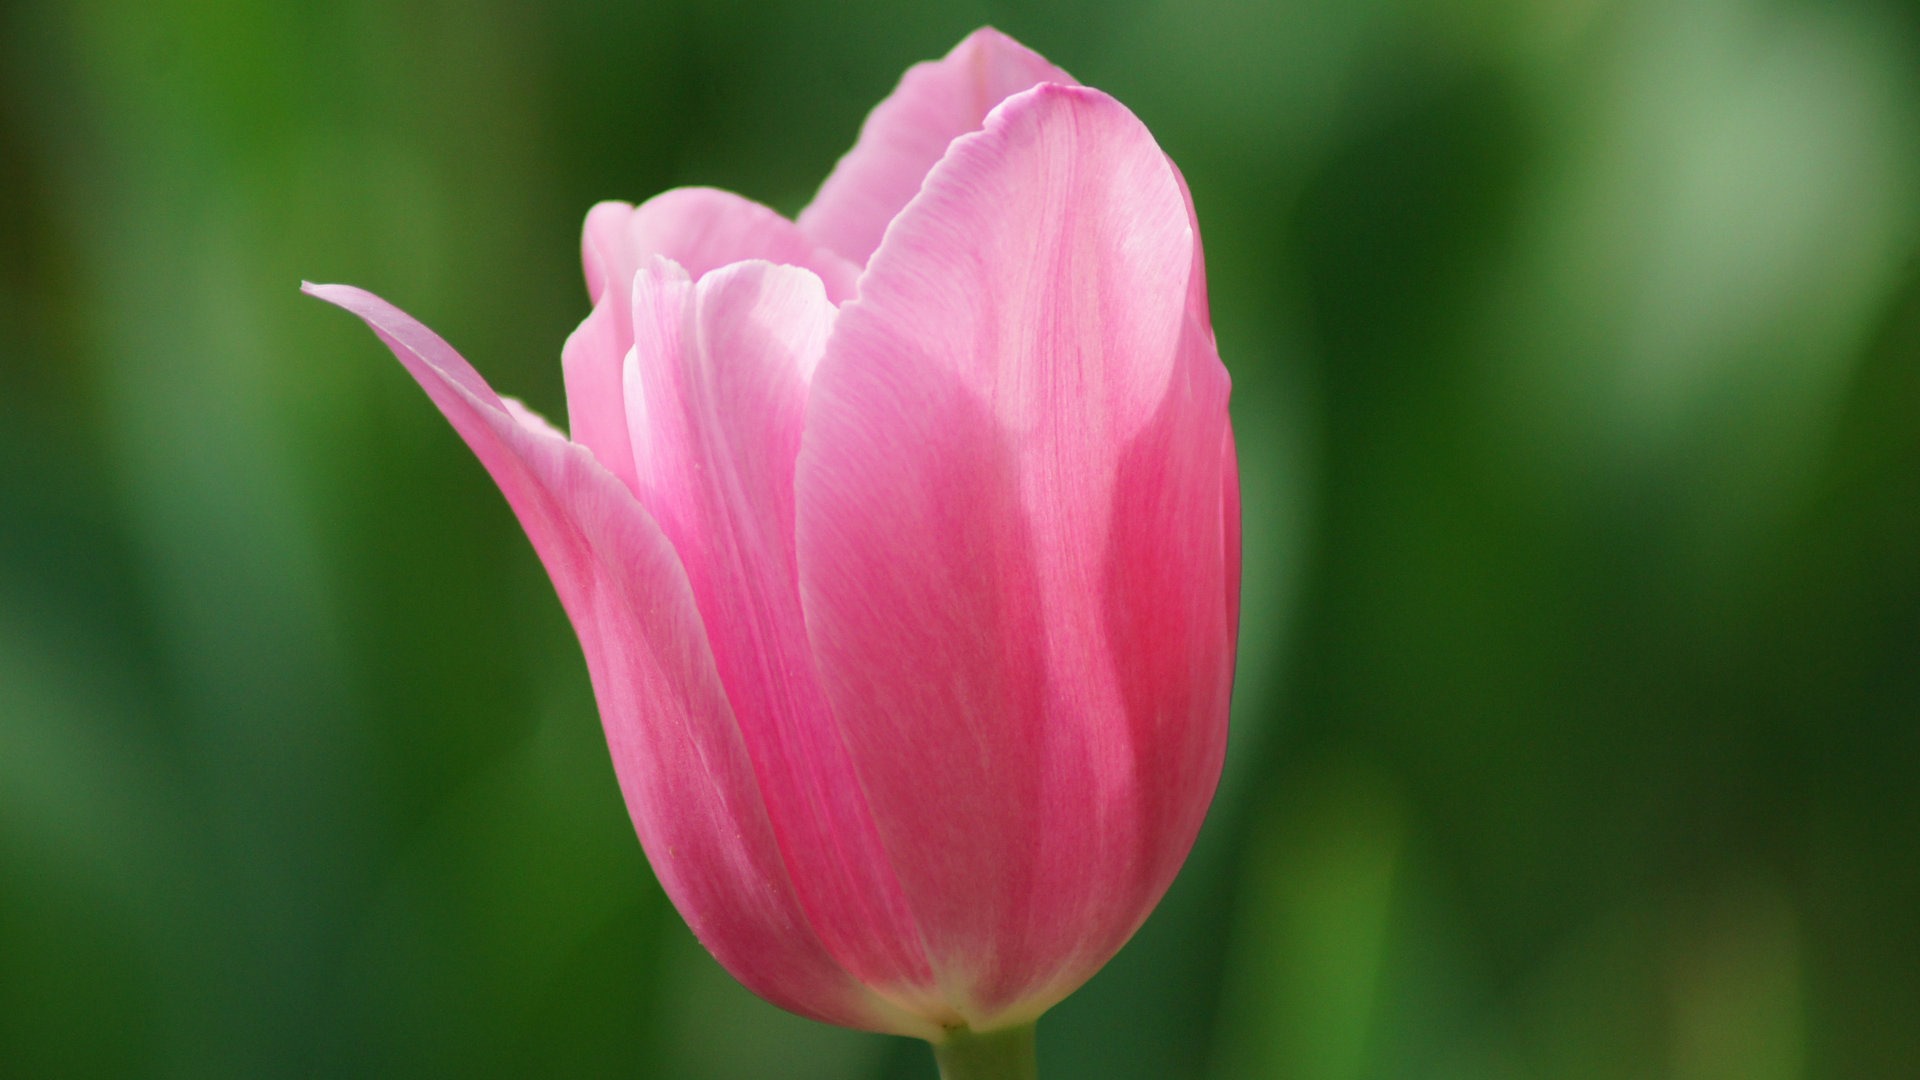 Fondos de pantalla HD de flores tulipanes frescos y coloridos #14 - 1920x1080